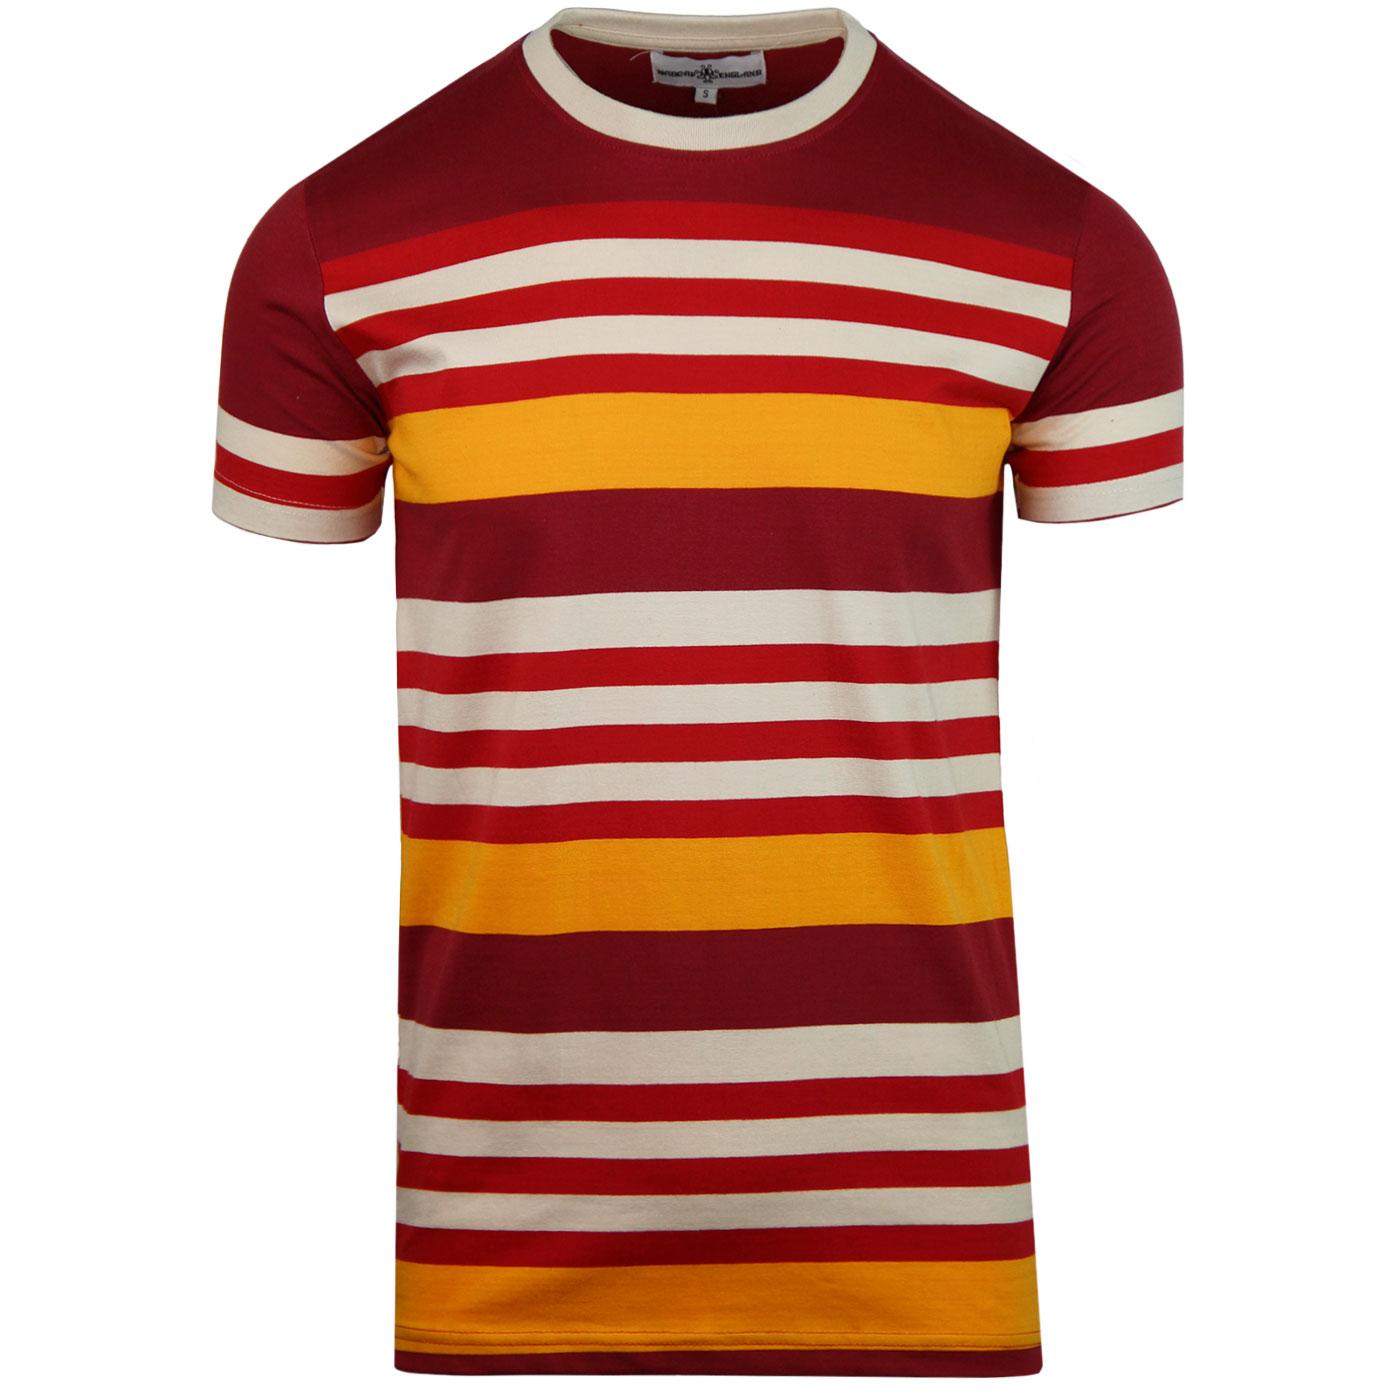 Cosmo MADCAP ENGLAND Retro 70s Stripe T-shirt (R)